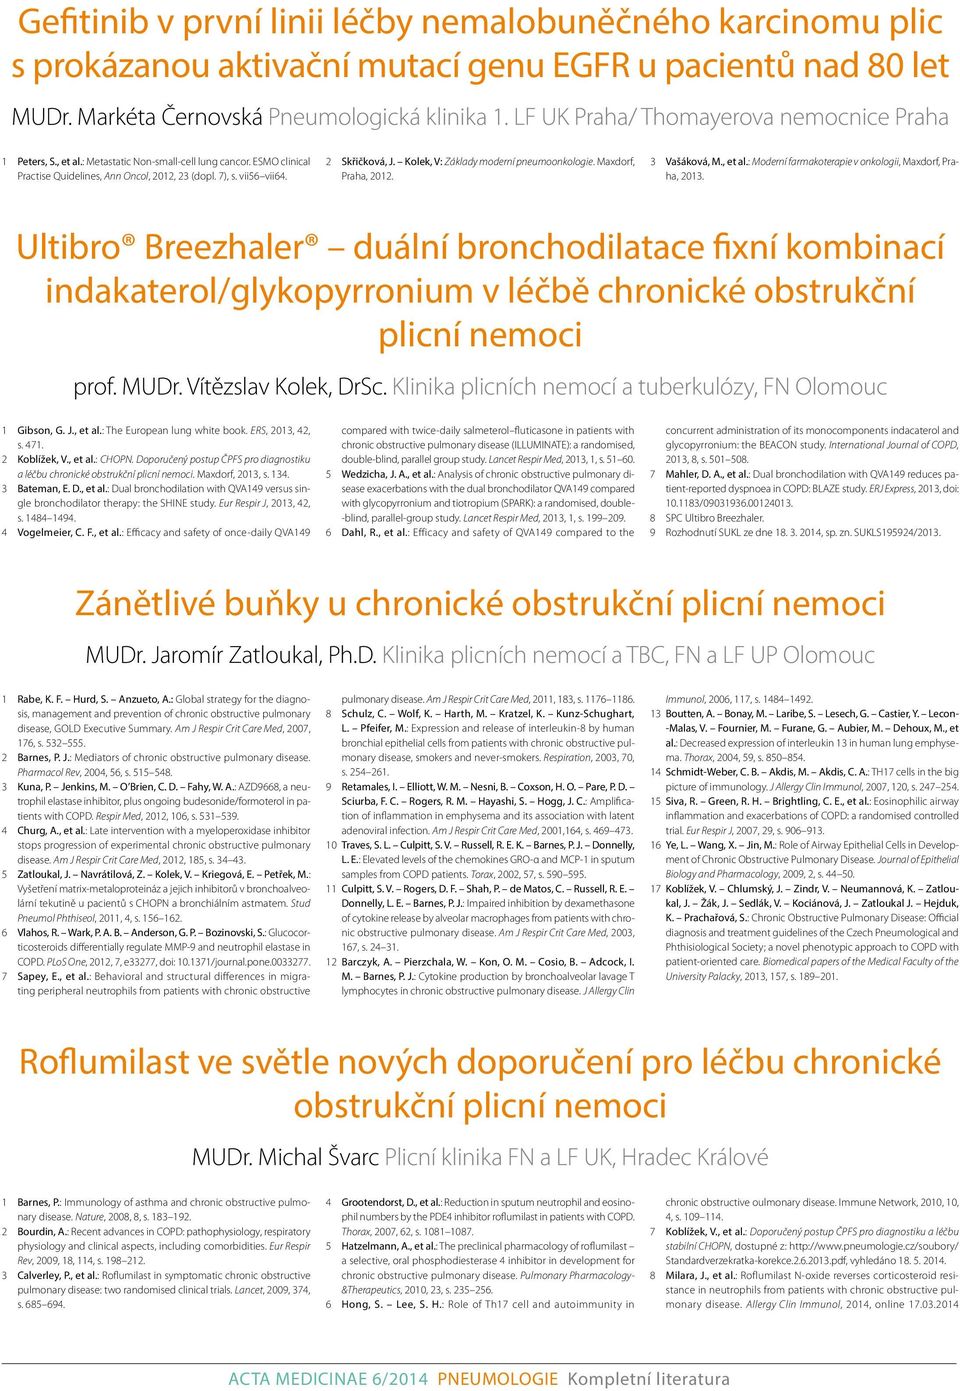 Kolek, V: Základy moderní pneumoonkologie. Maxdorf, Praha, 2012. 3 Vašáková, M., et al.: Moderní farmakoterapie v onkologii, Maxdorf, Praha, 2013.